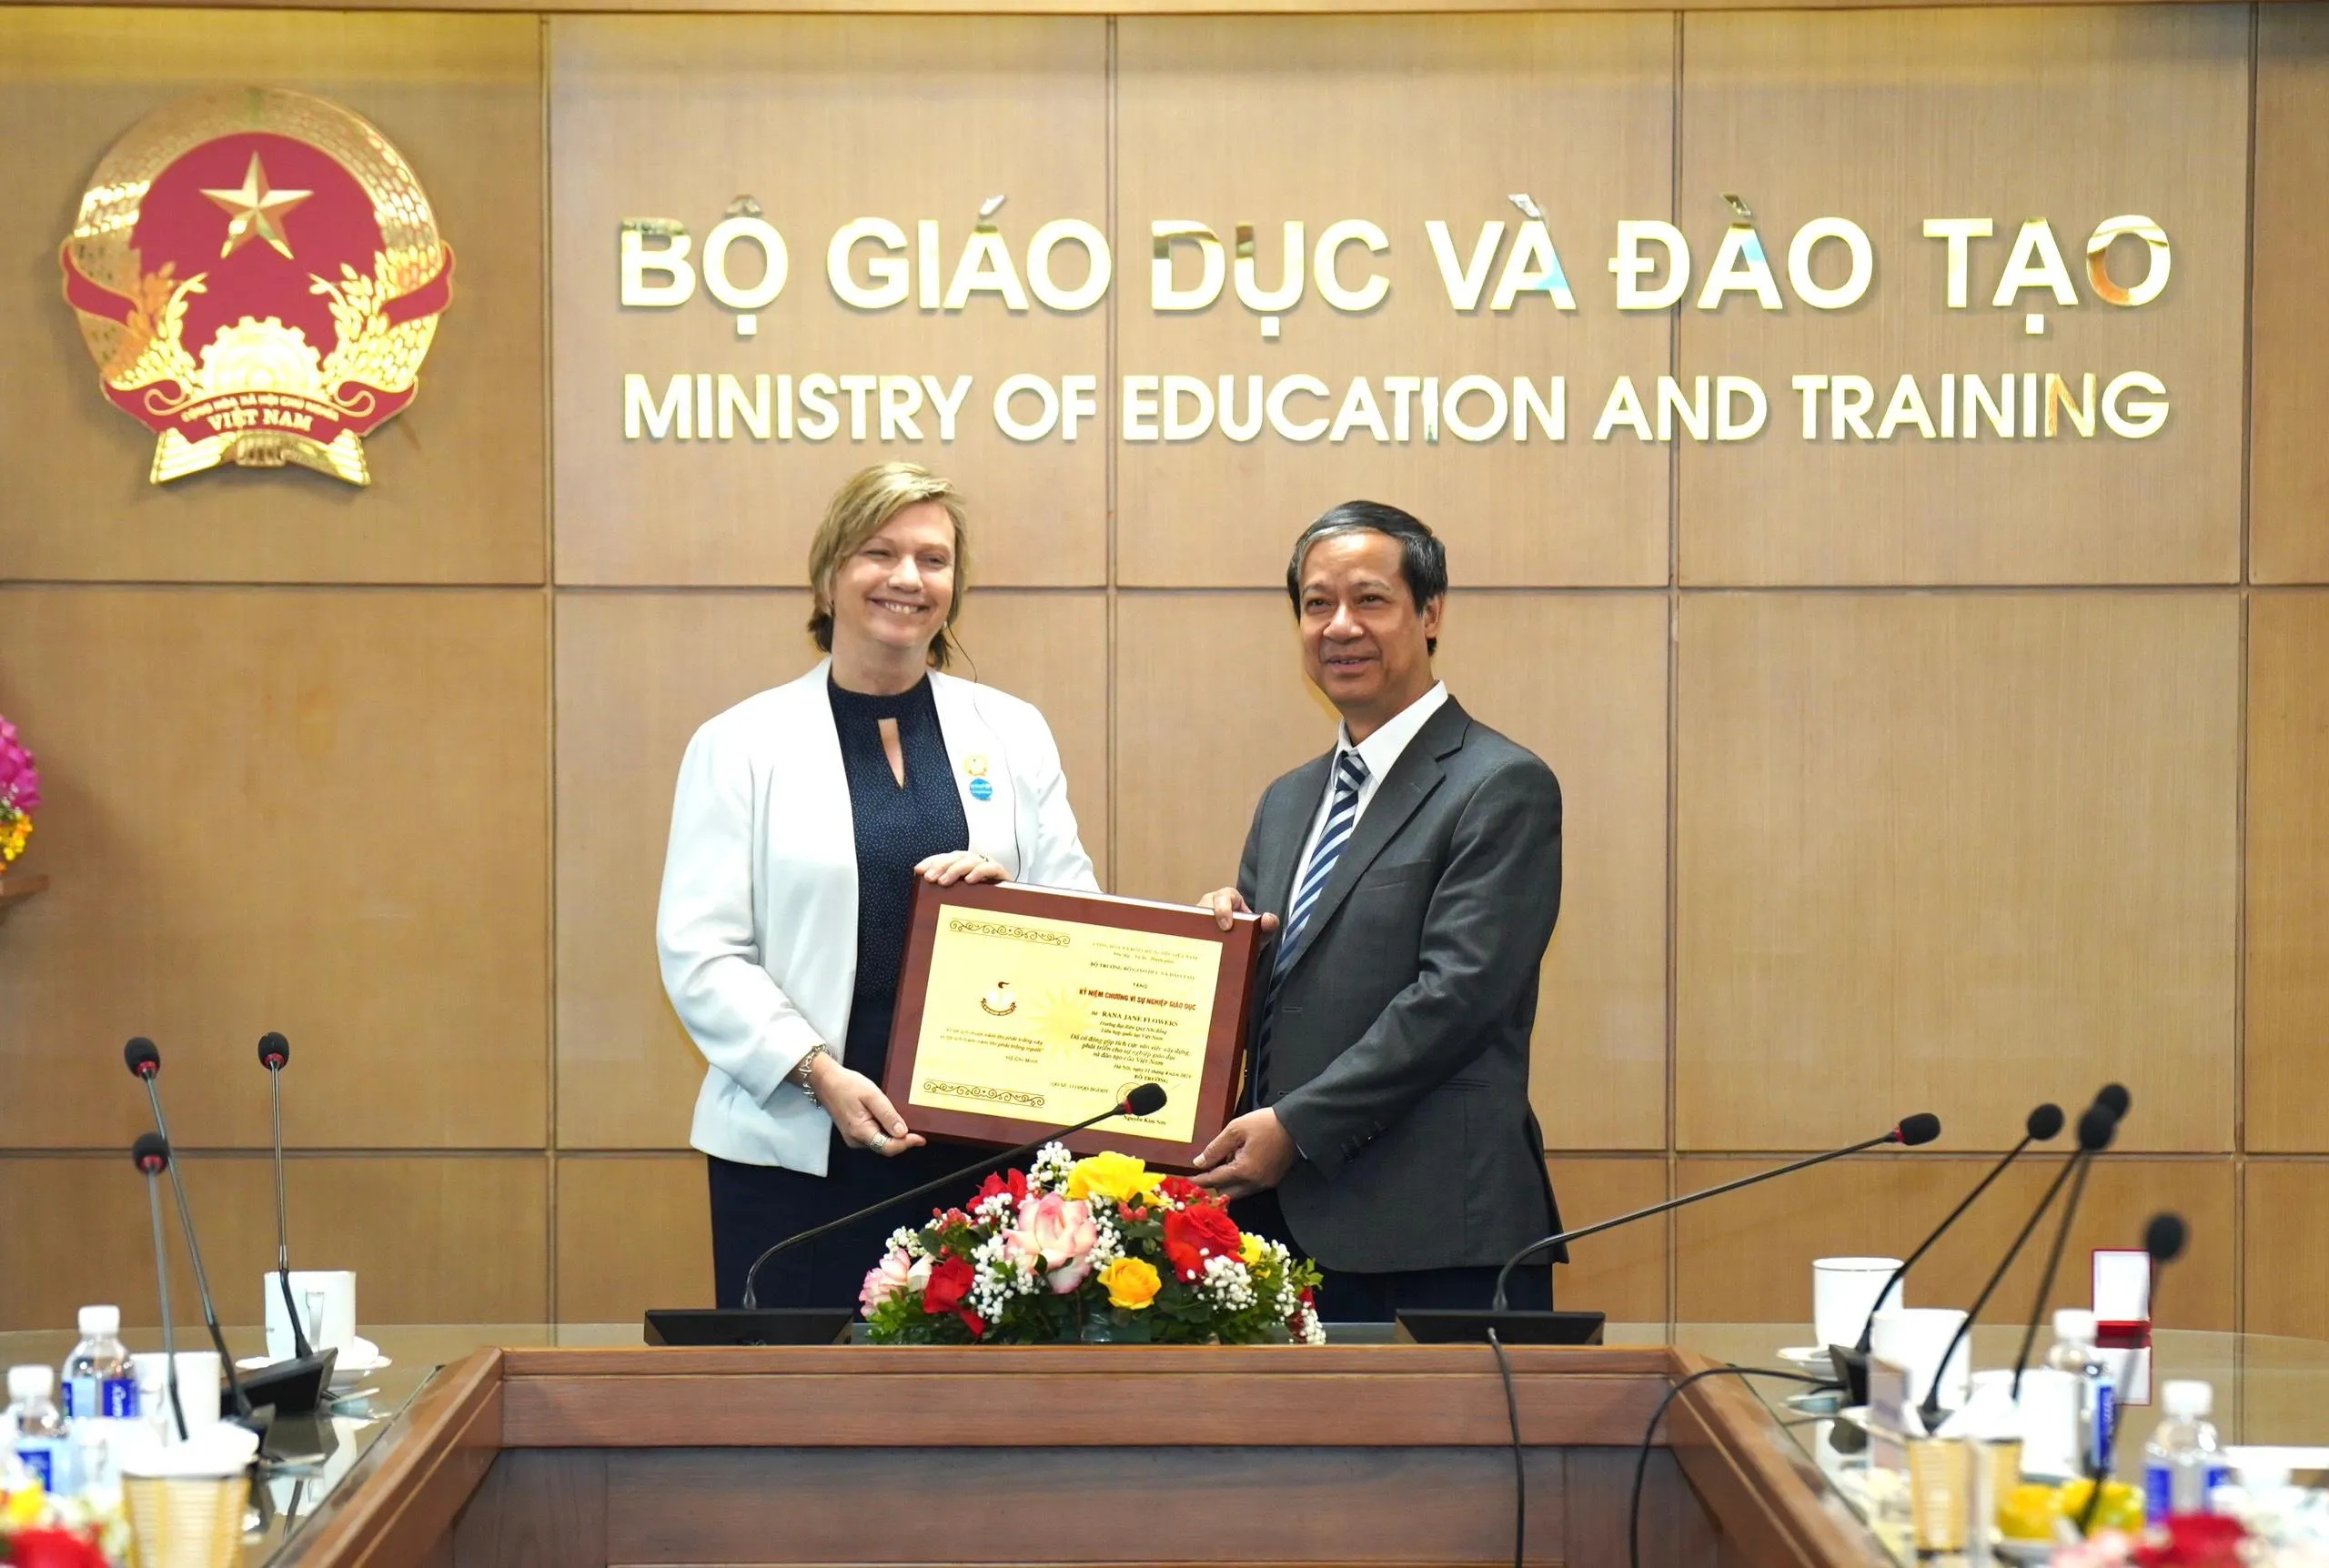 Bộ trưởng Bộ GD&ĐT Nguyễn Kim Sơn trao Kỷ niệm chương “Vì sự nghiệp giáo dục” cho bà Rana Jane Flowers, Trưởng đại diện Unicef tại Việt Nam.